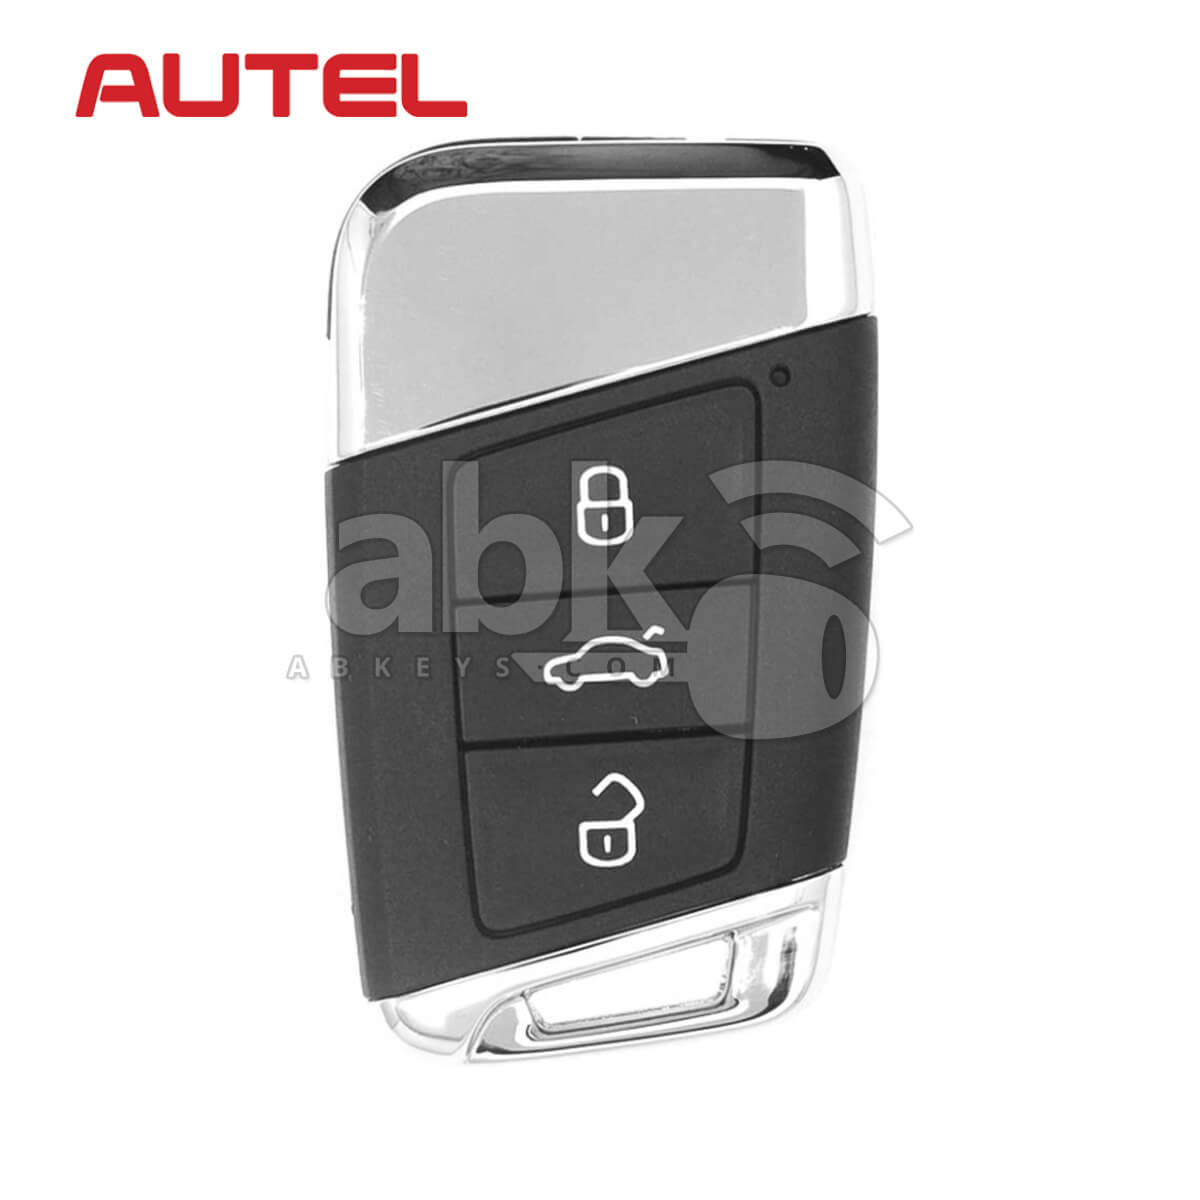 Autel Universal Smart Key 3Buttons Volkswagen Style IKEYVW003AL - ABK-4478-IKEYVW003AL - ABKEYS.COM